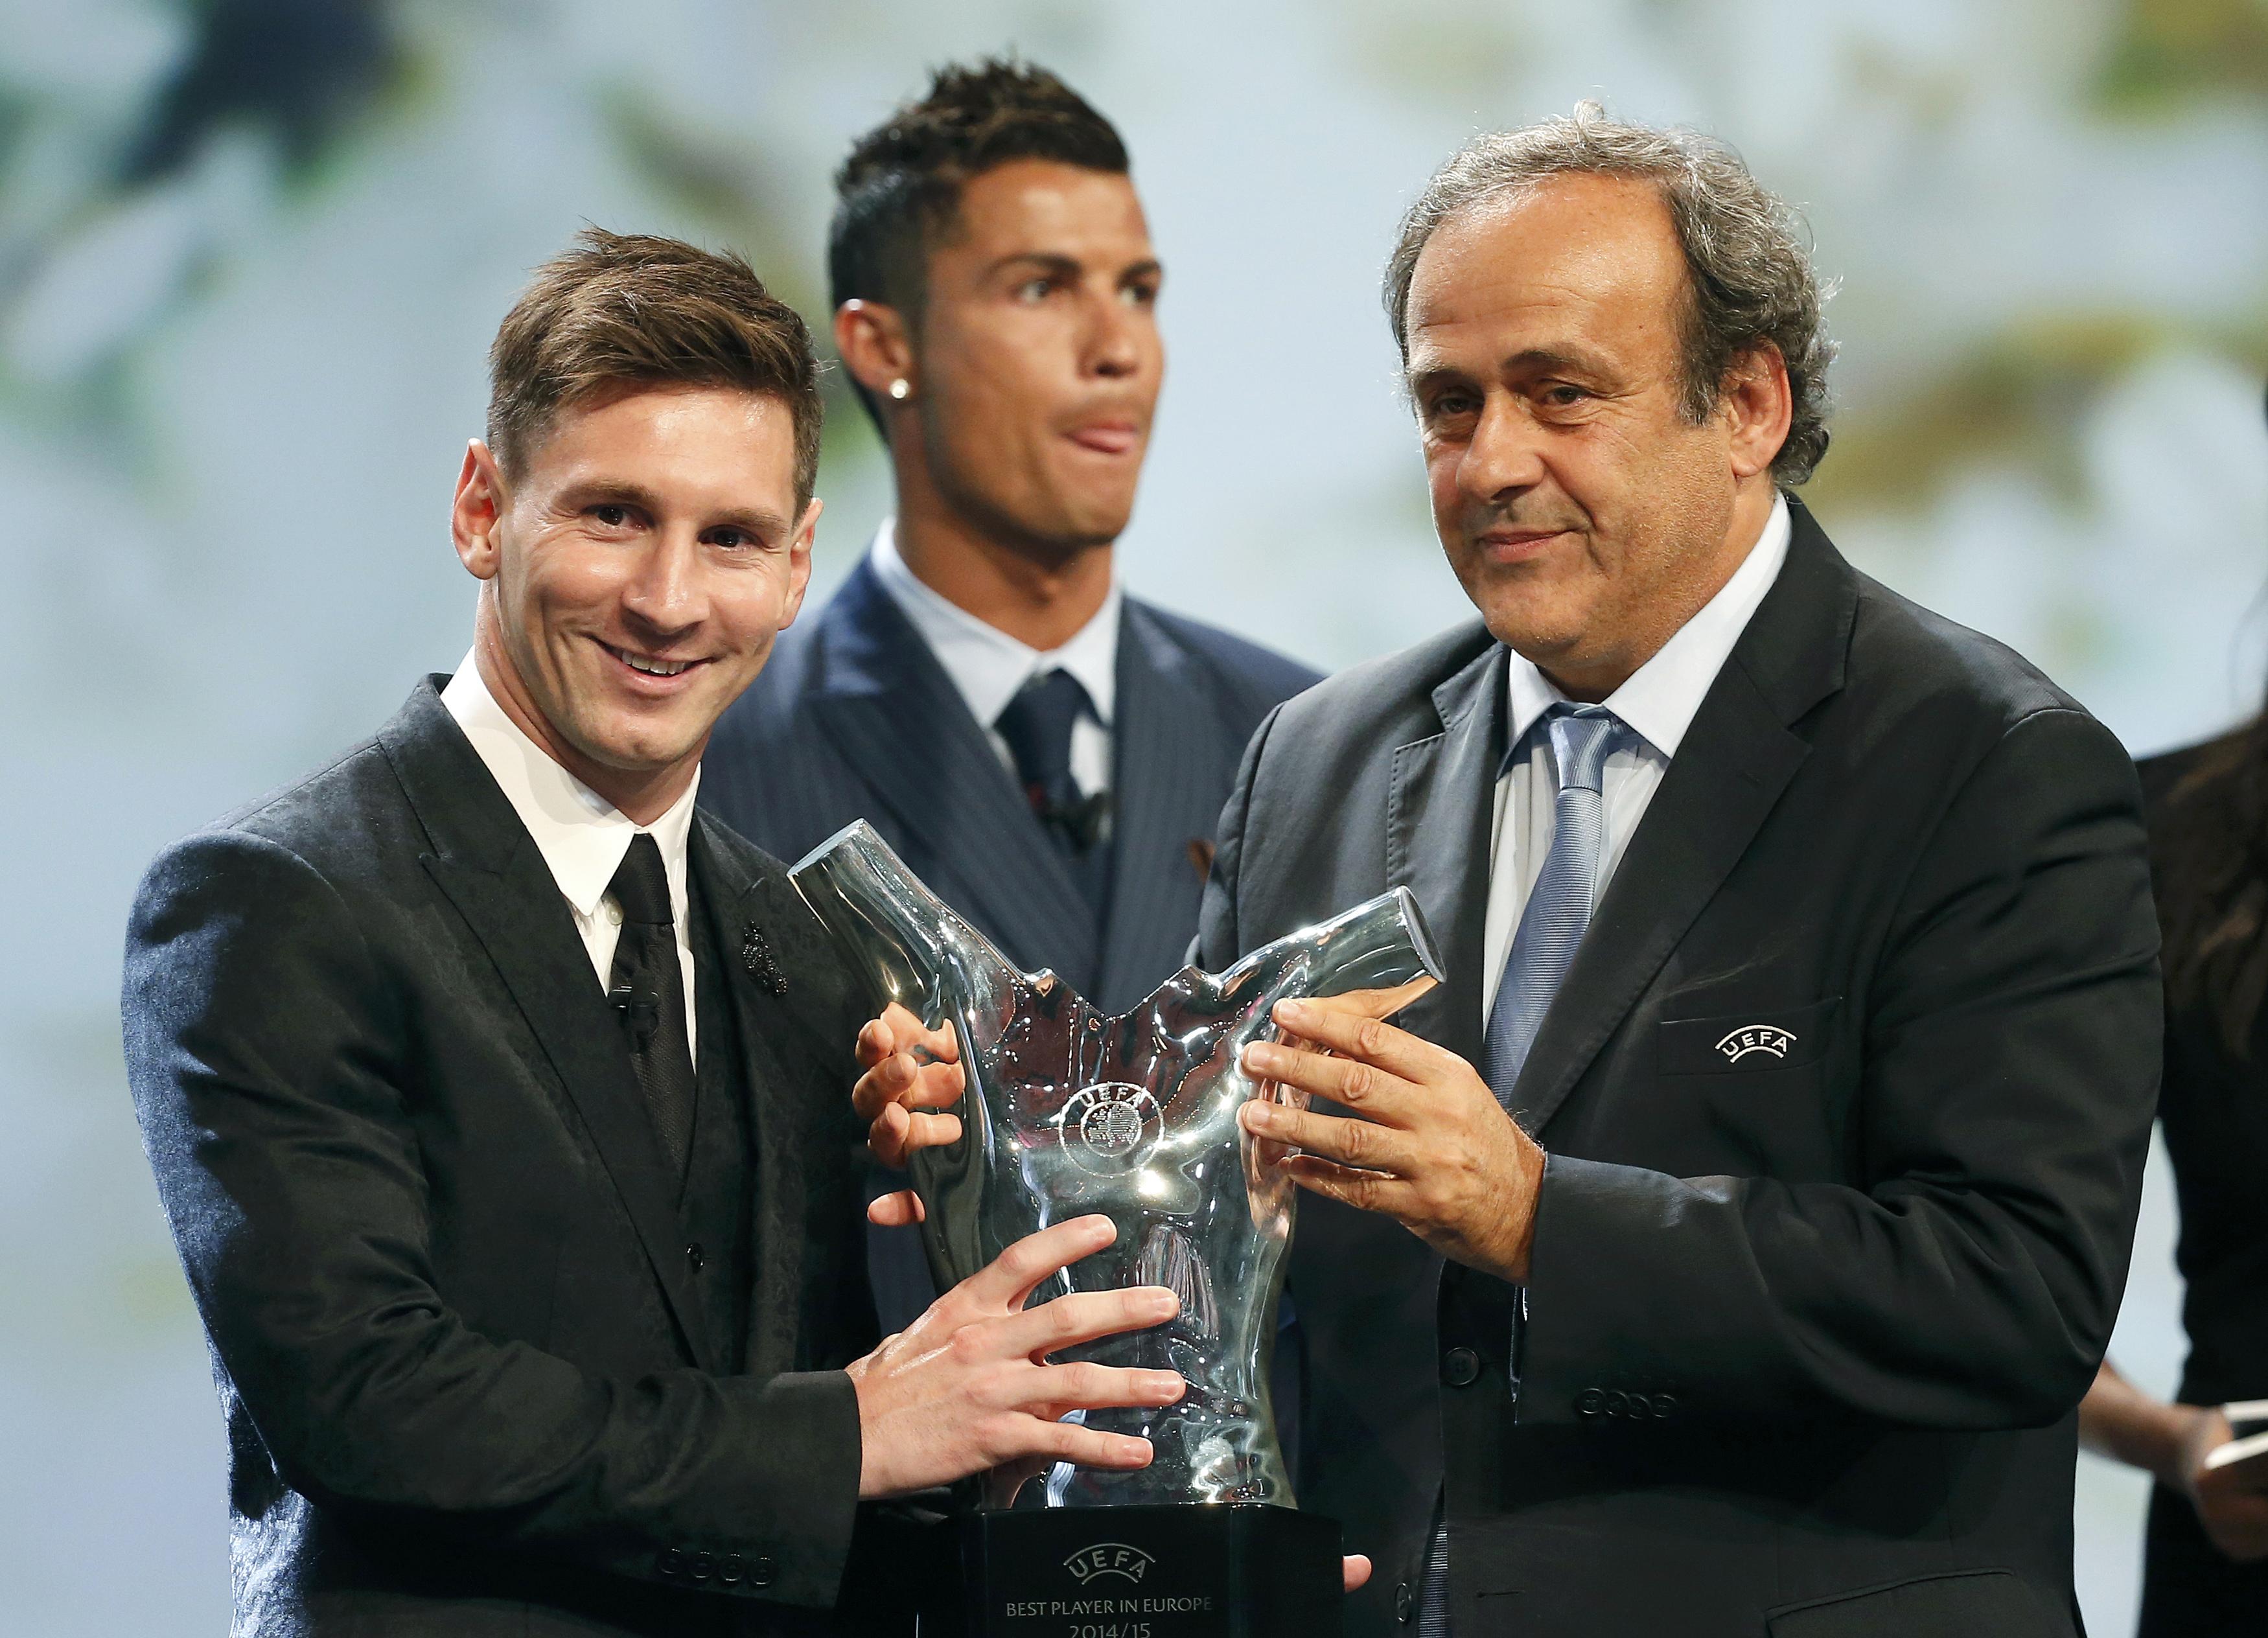 Eligen a Messi como mejor jugador del año en Europa